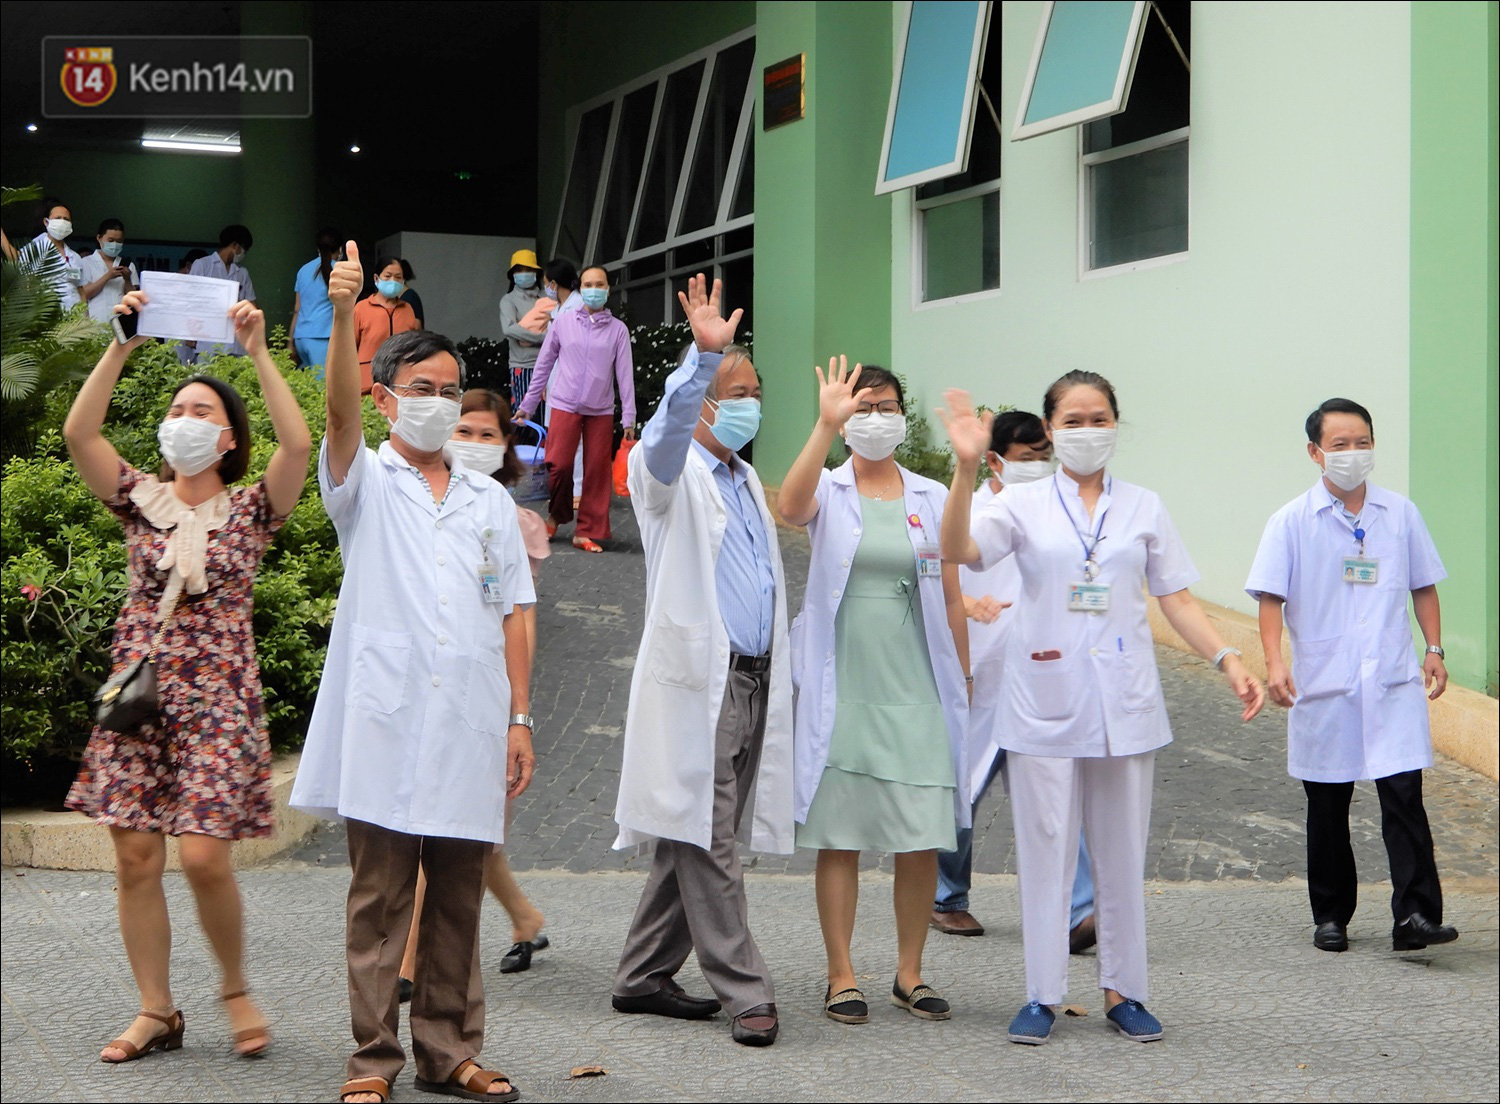 Thêm 1 bệnh viện ở Đà Nẵng được gỡ phong tỏa, các y bác sĩ vỗ tay vui mừng - Ảnh 3.